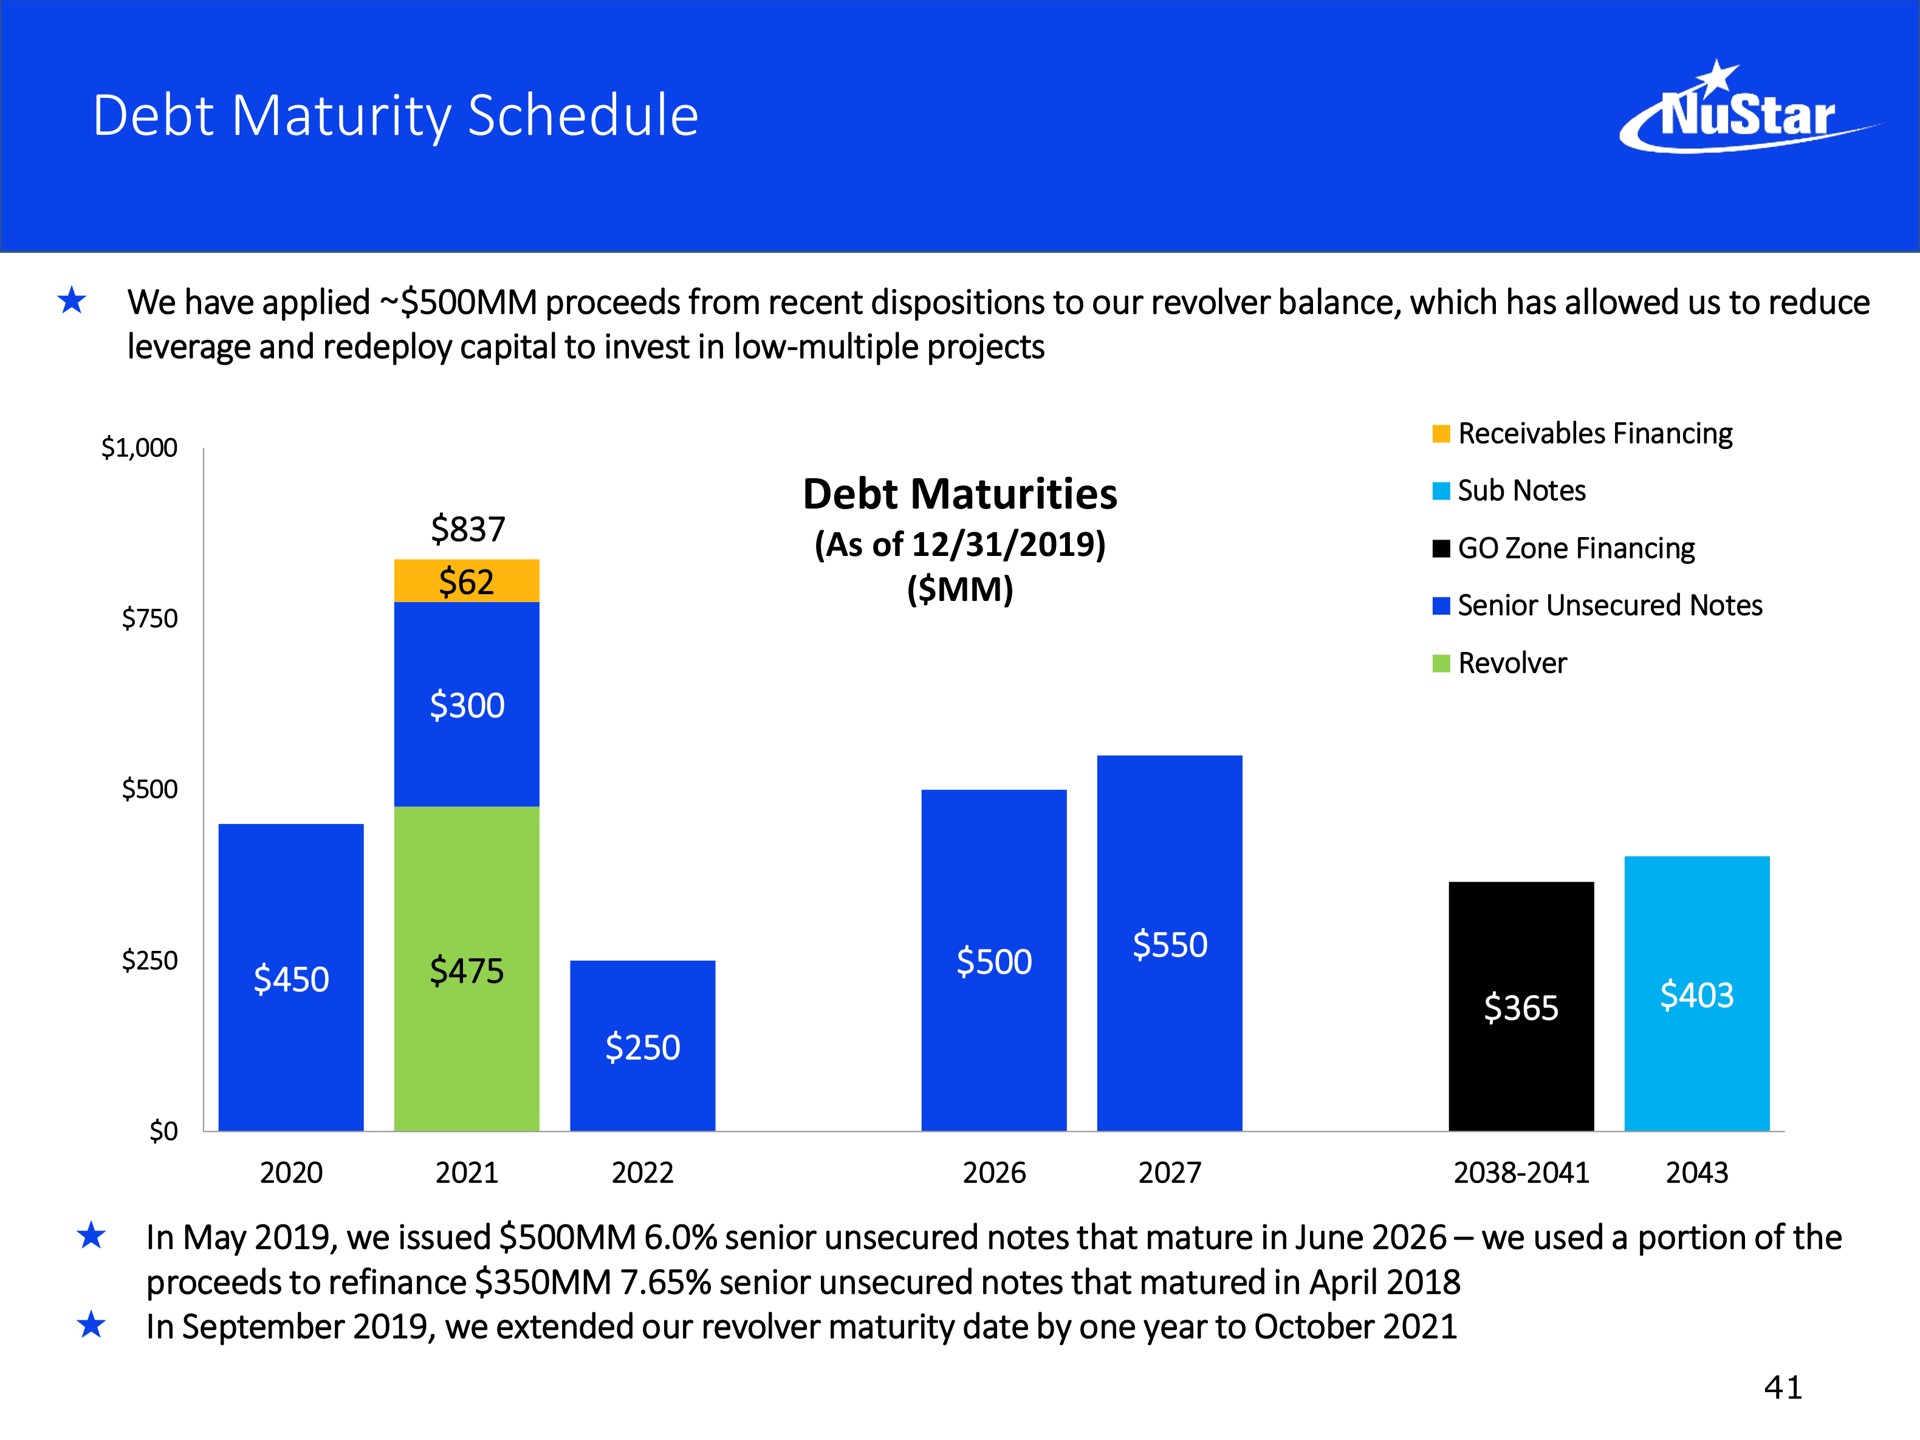 debt maturity schedule as of go zone financing | NuStar Energy